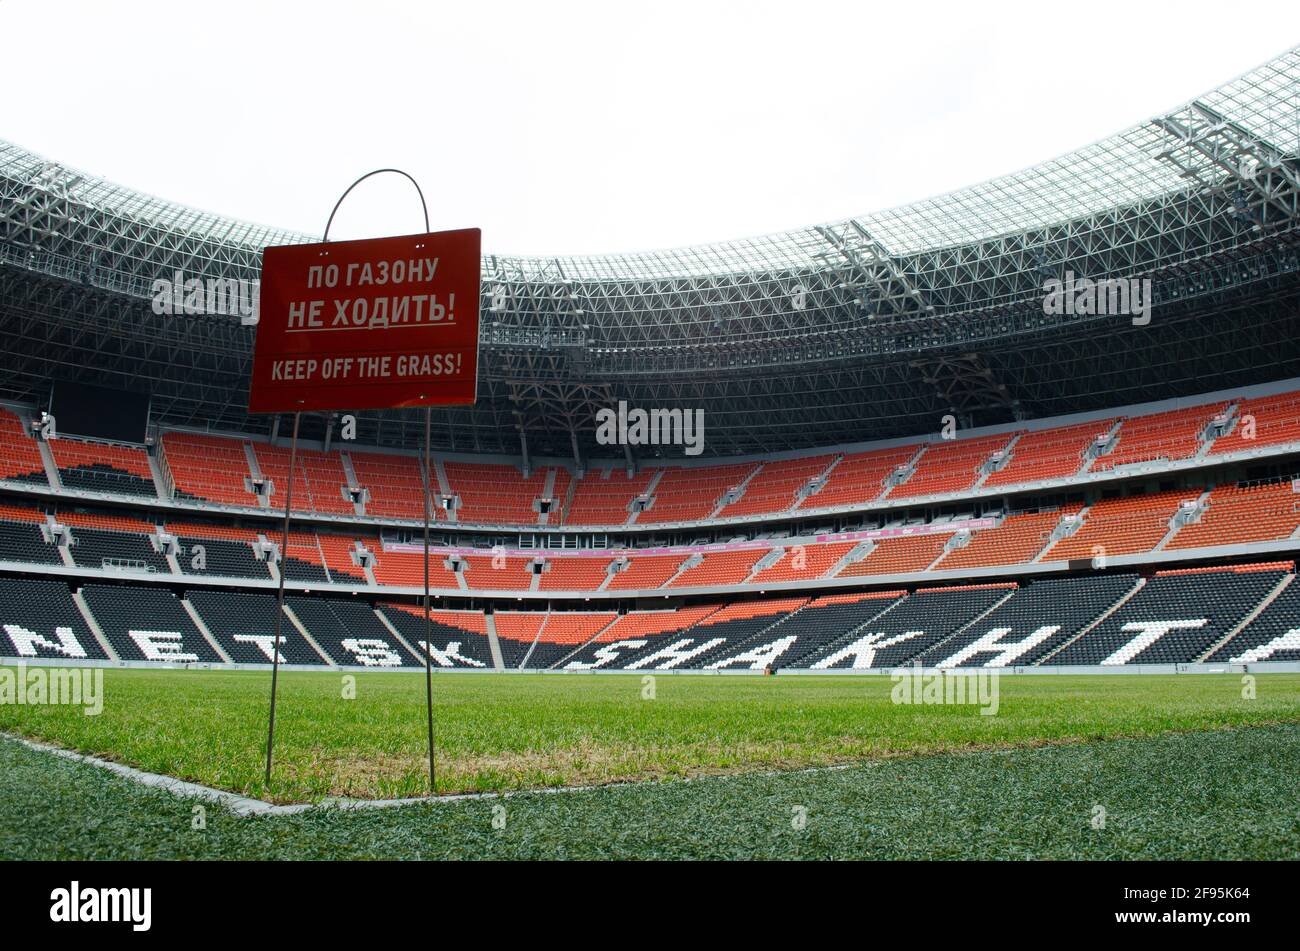 16 aprile 2021. Regione di Donetsk, Ucraina. Lo stand si trova allo stadio Donbass Arena della squadra di calcio Shakhtar (Donetsk) nella proclamata Repubblica popolare di Donetsk. Ora lo stadio non accetta partite. Foto Stock